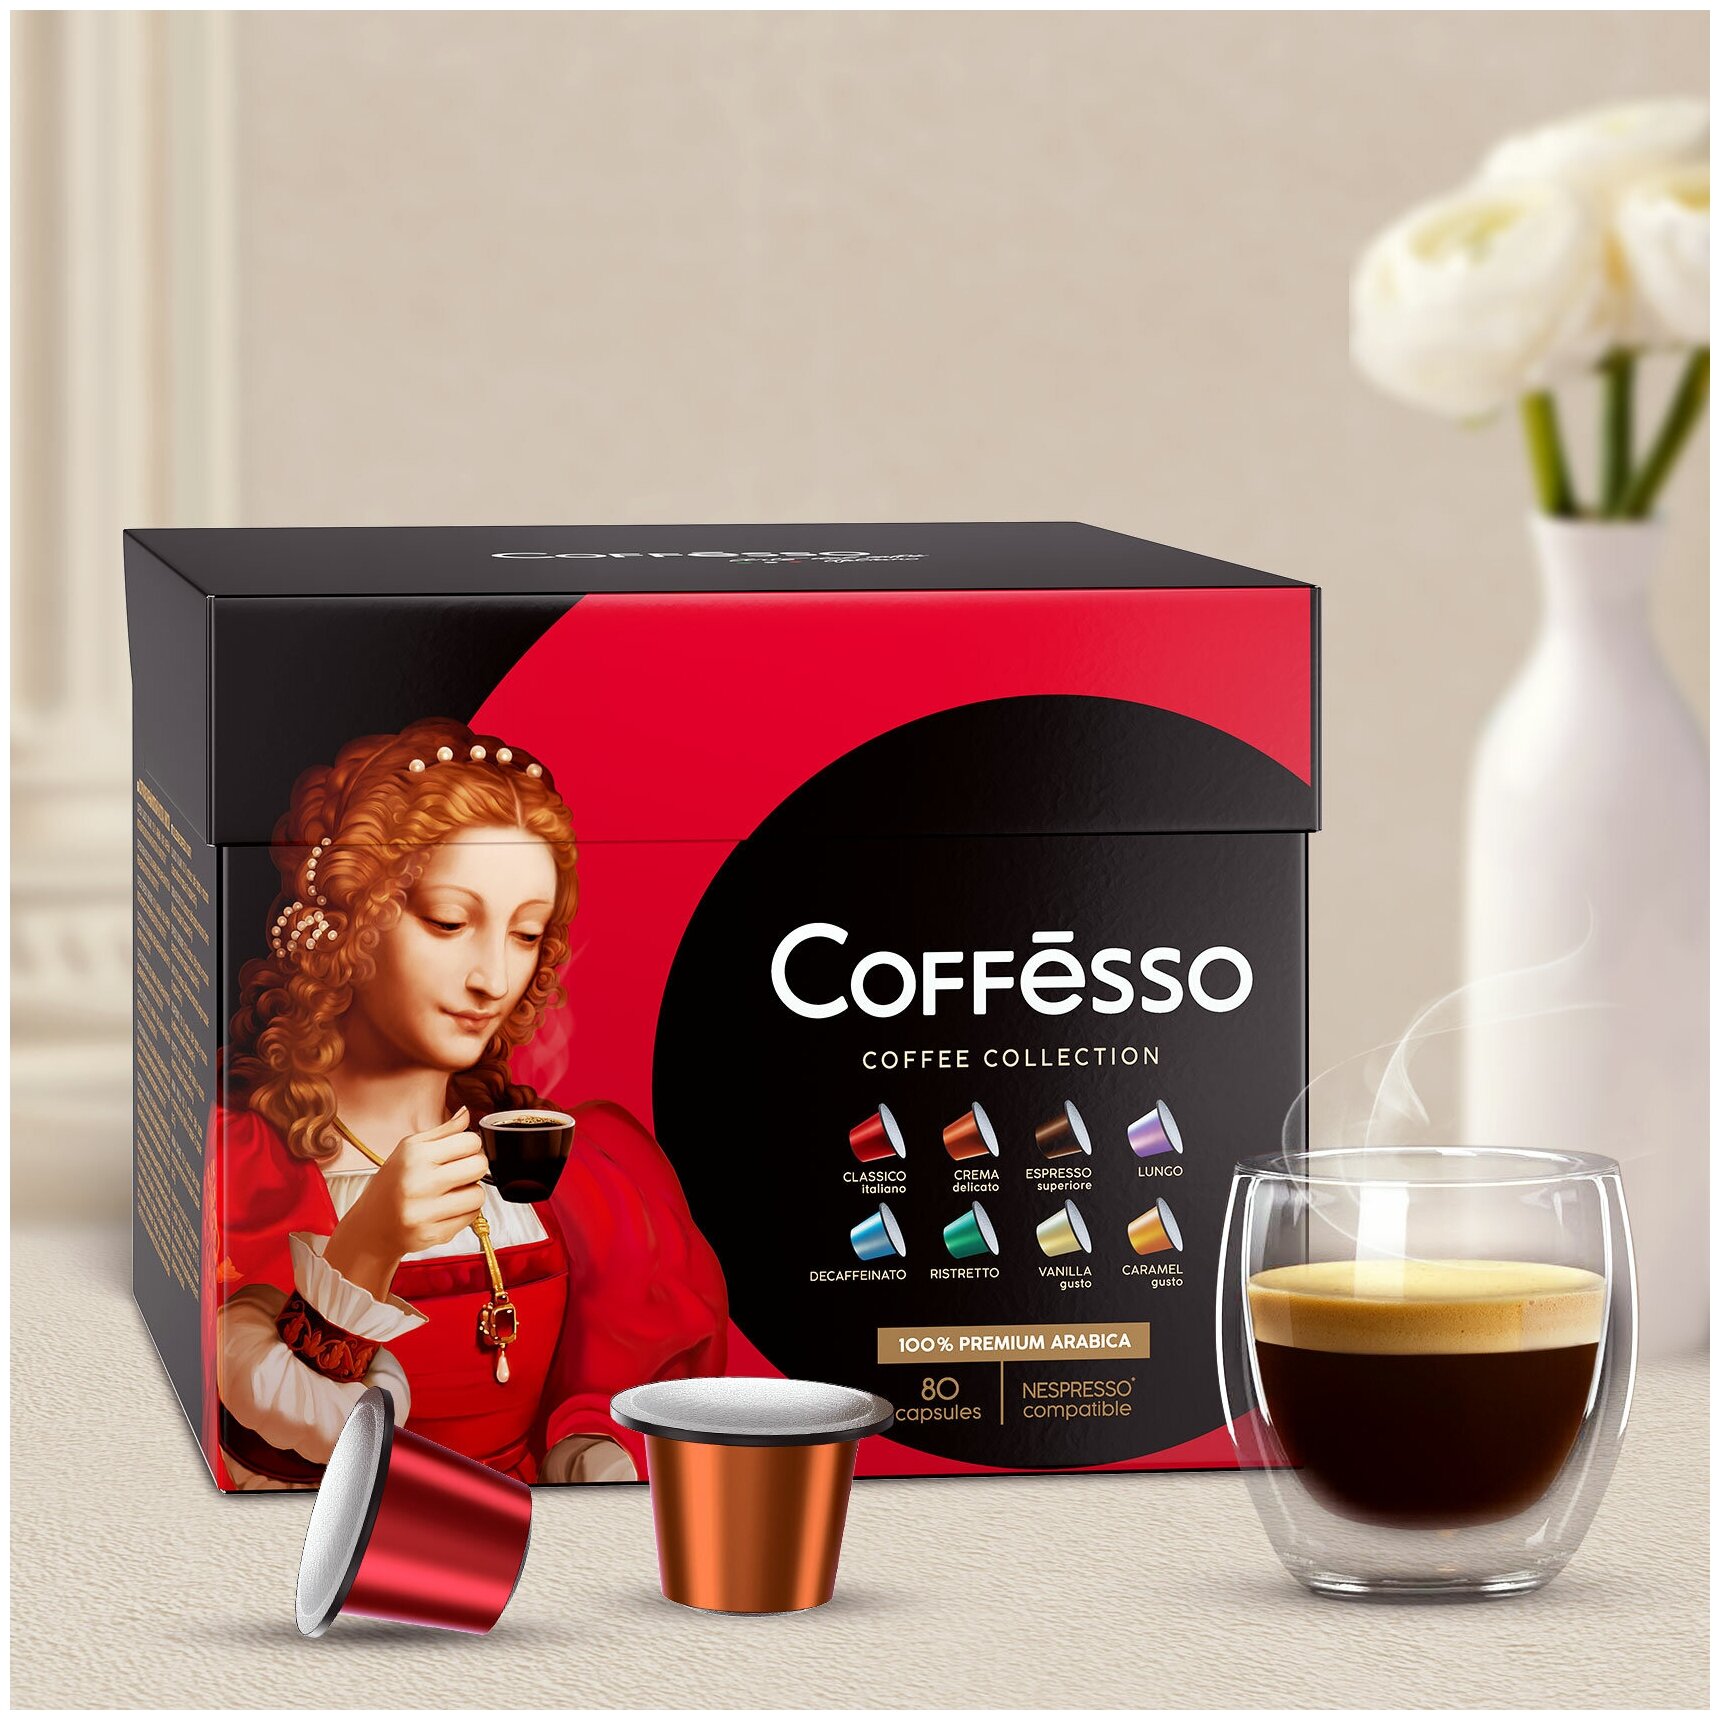 Кофе в капсулах Coffesso (Коффессо) "ассорти 8 вкусов" 80 капсул по 10 штук (для кофемашины Nespresso)